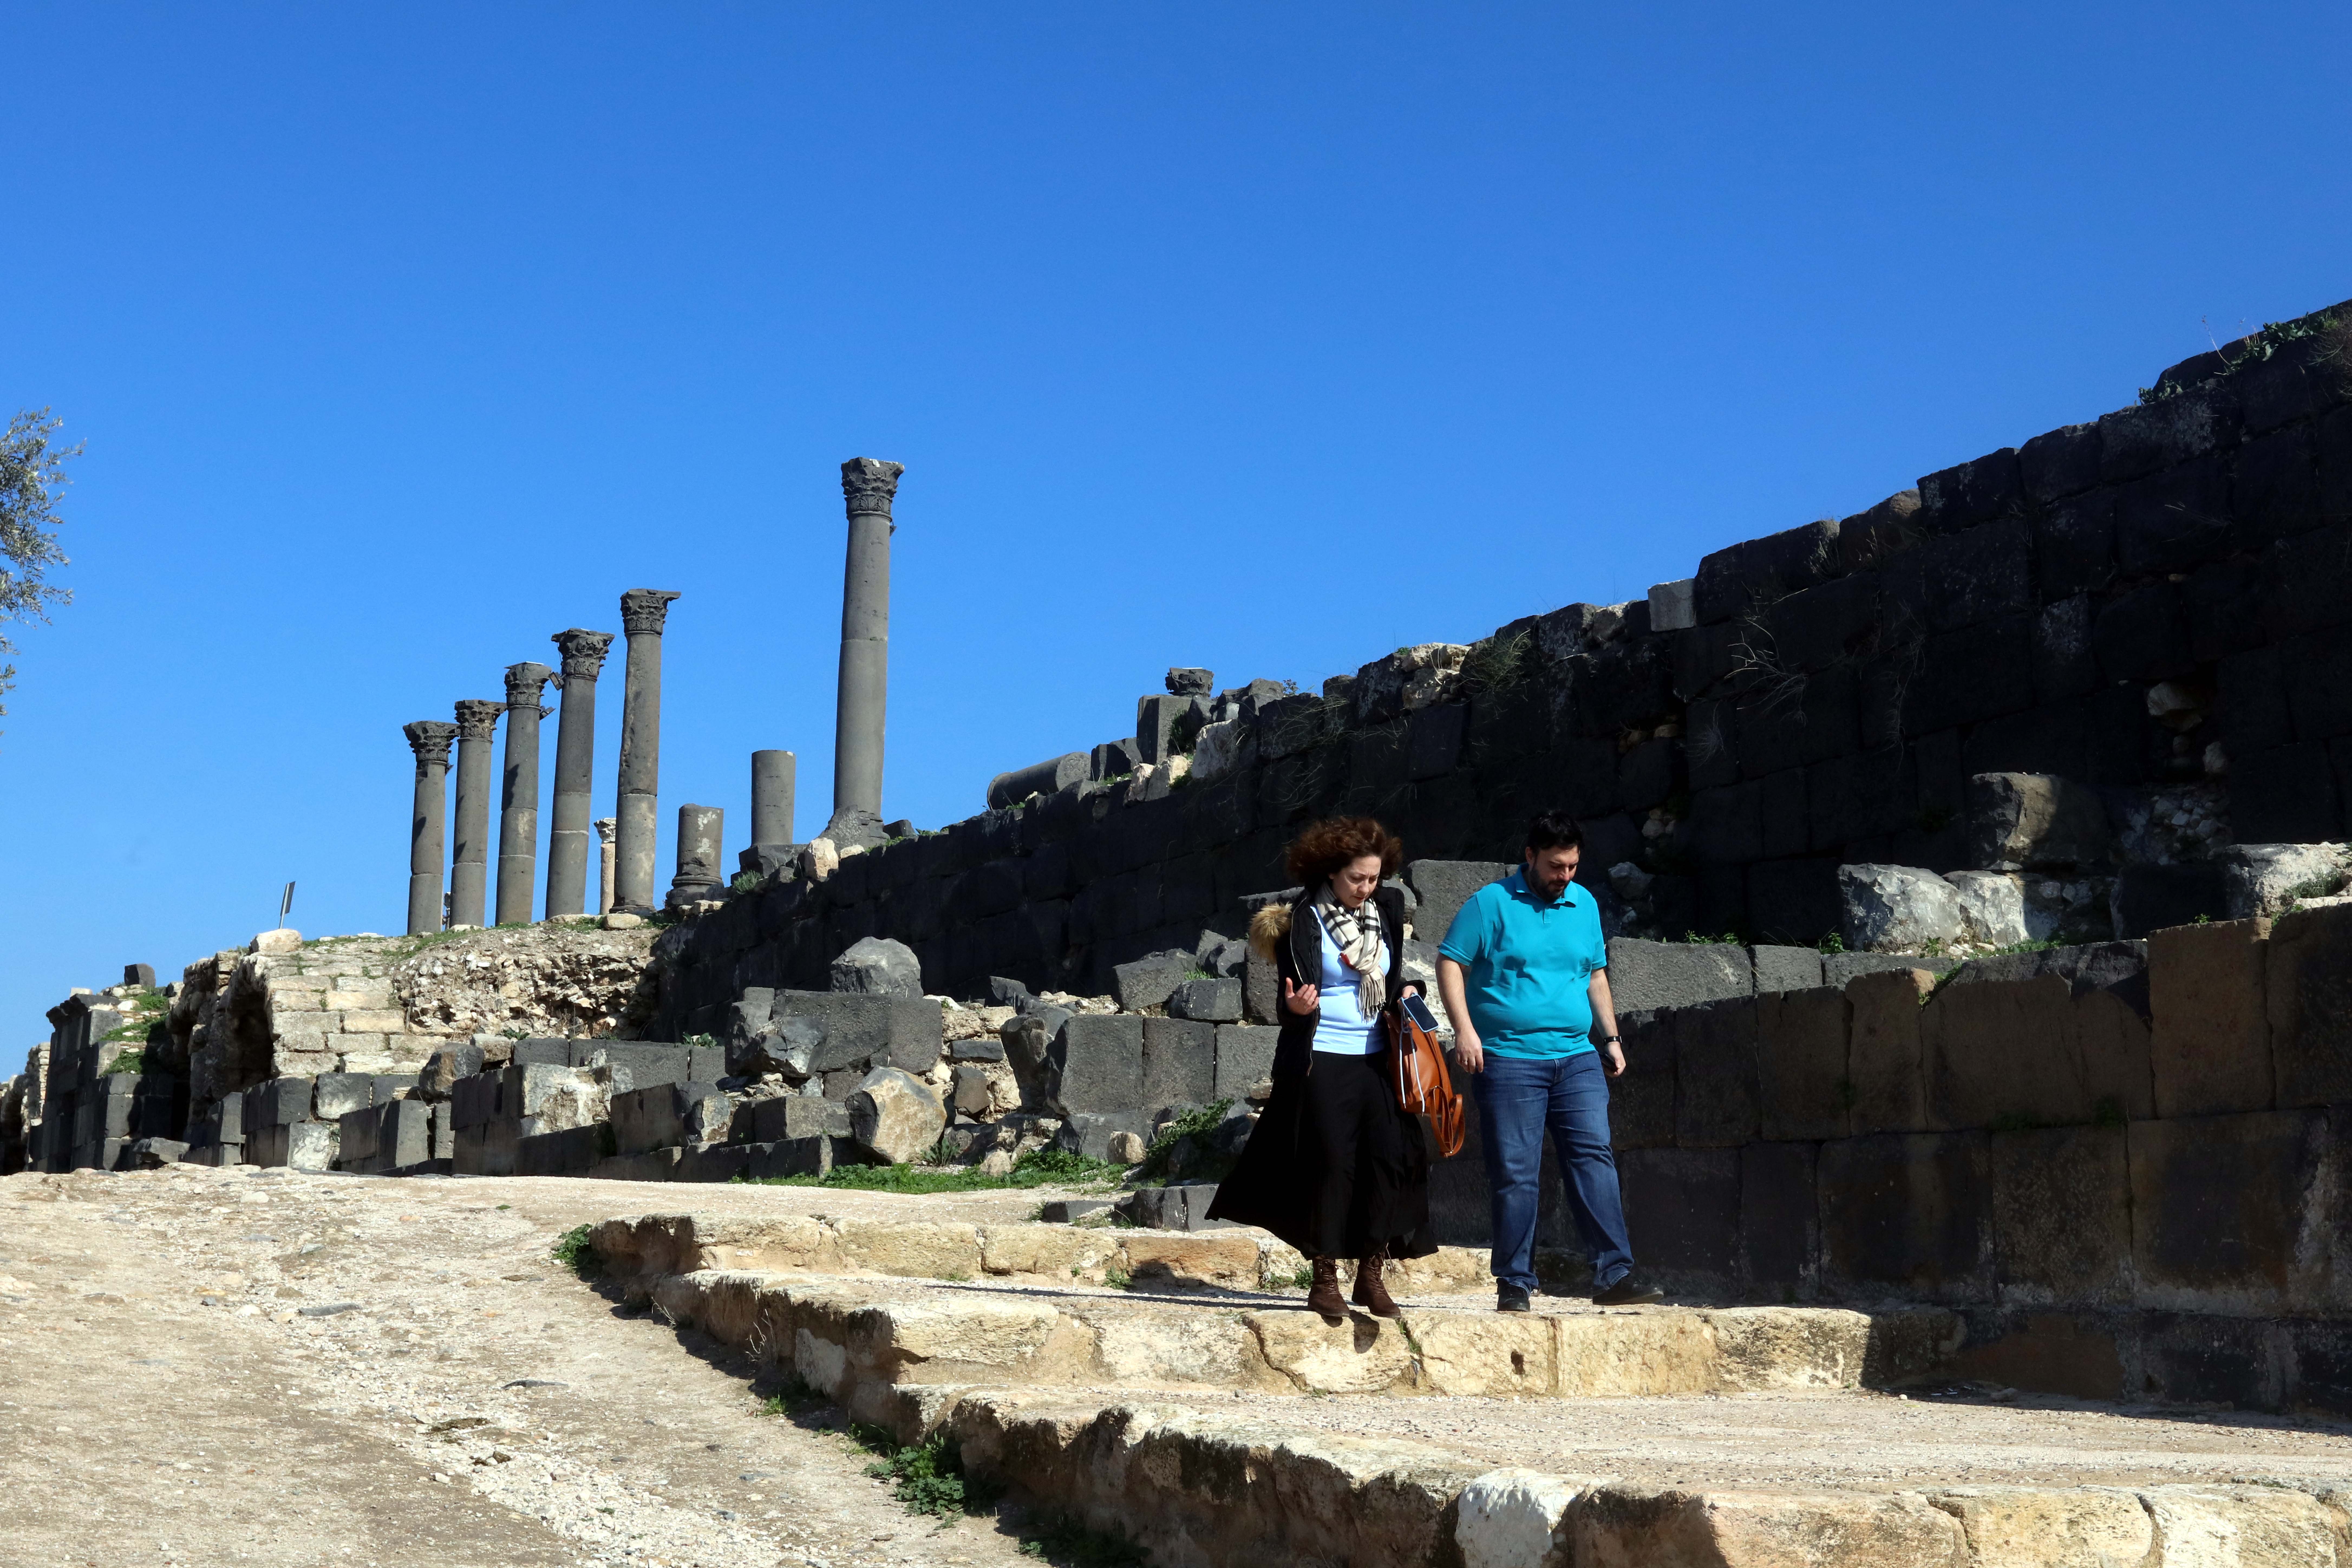 UMM QAIS, Sejumlah wisatawan mengunjungi sebuah situs arkeologi di Umm Qais, Yordania, pada 17 Januari 2023. (Xinhua/Mohammad Abu Ghosh)